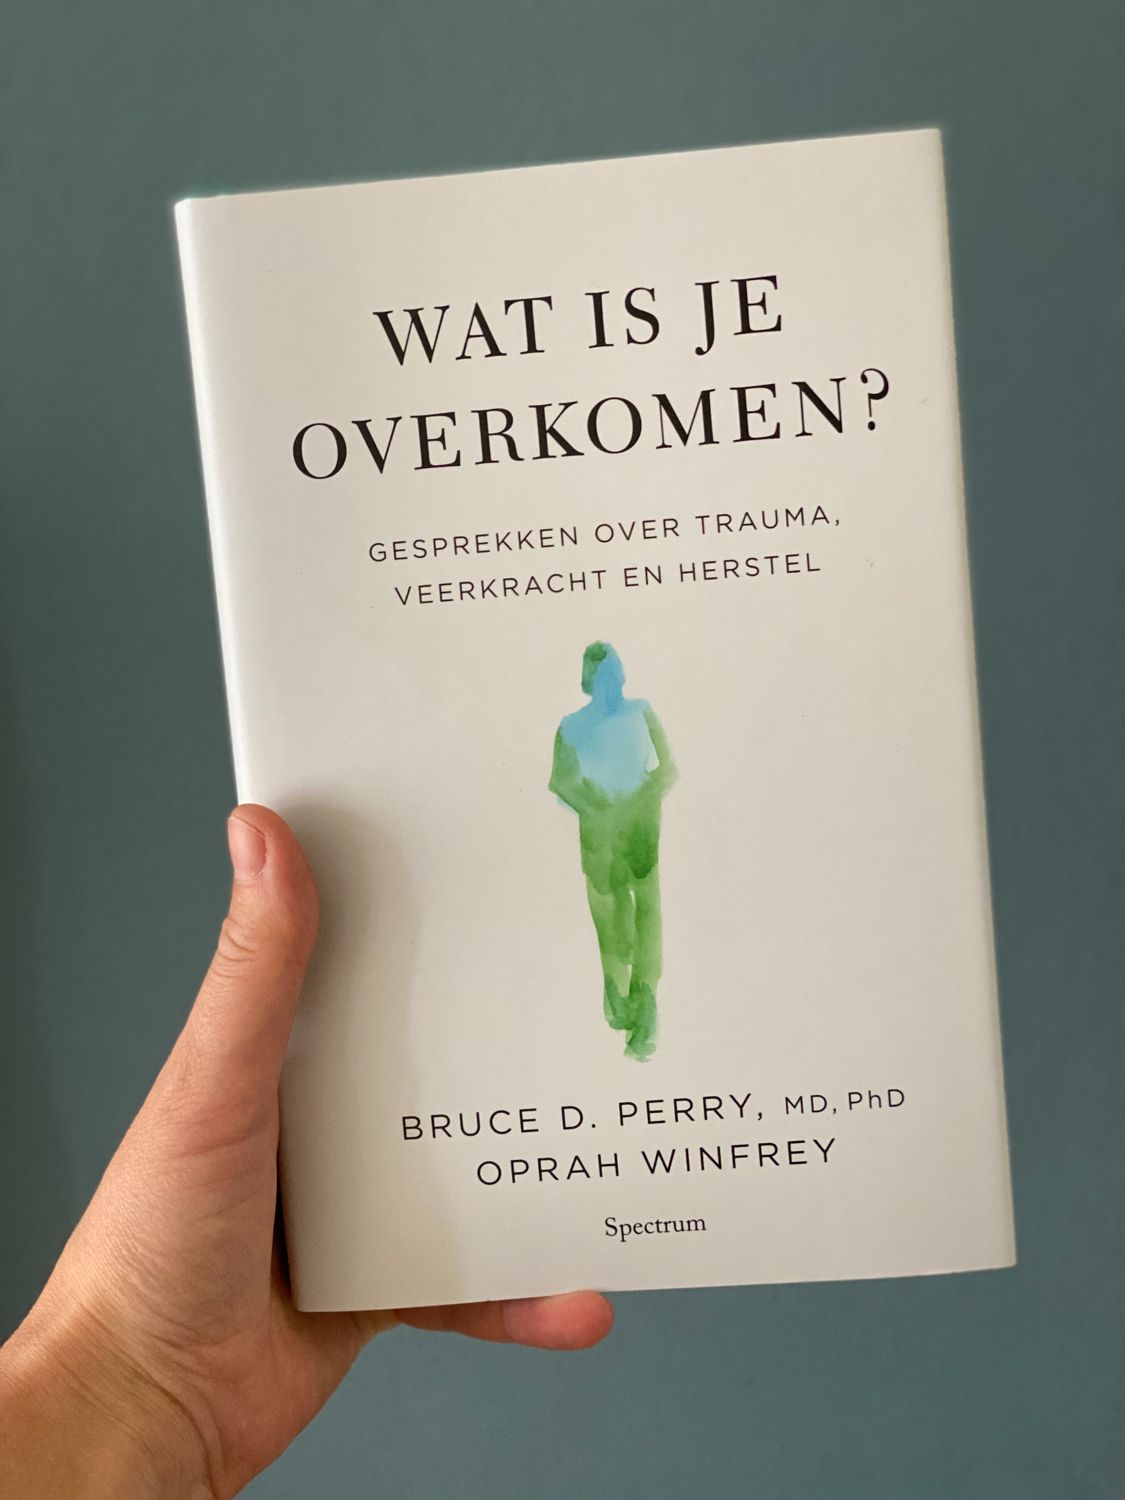 Oprah Winfrey en trauma-expert Bruce Perry benadrukken de impact van jeugdervaringen op volwassen leven. Ze pleiten voor begrip, herstel en empathie, niet schuld en schaamte. Dit boek biedt hoop en veerkracht na tegenspoed.